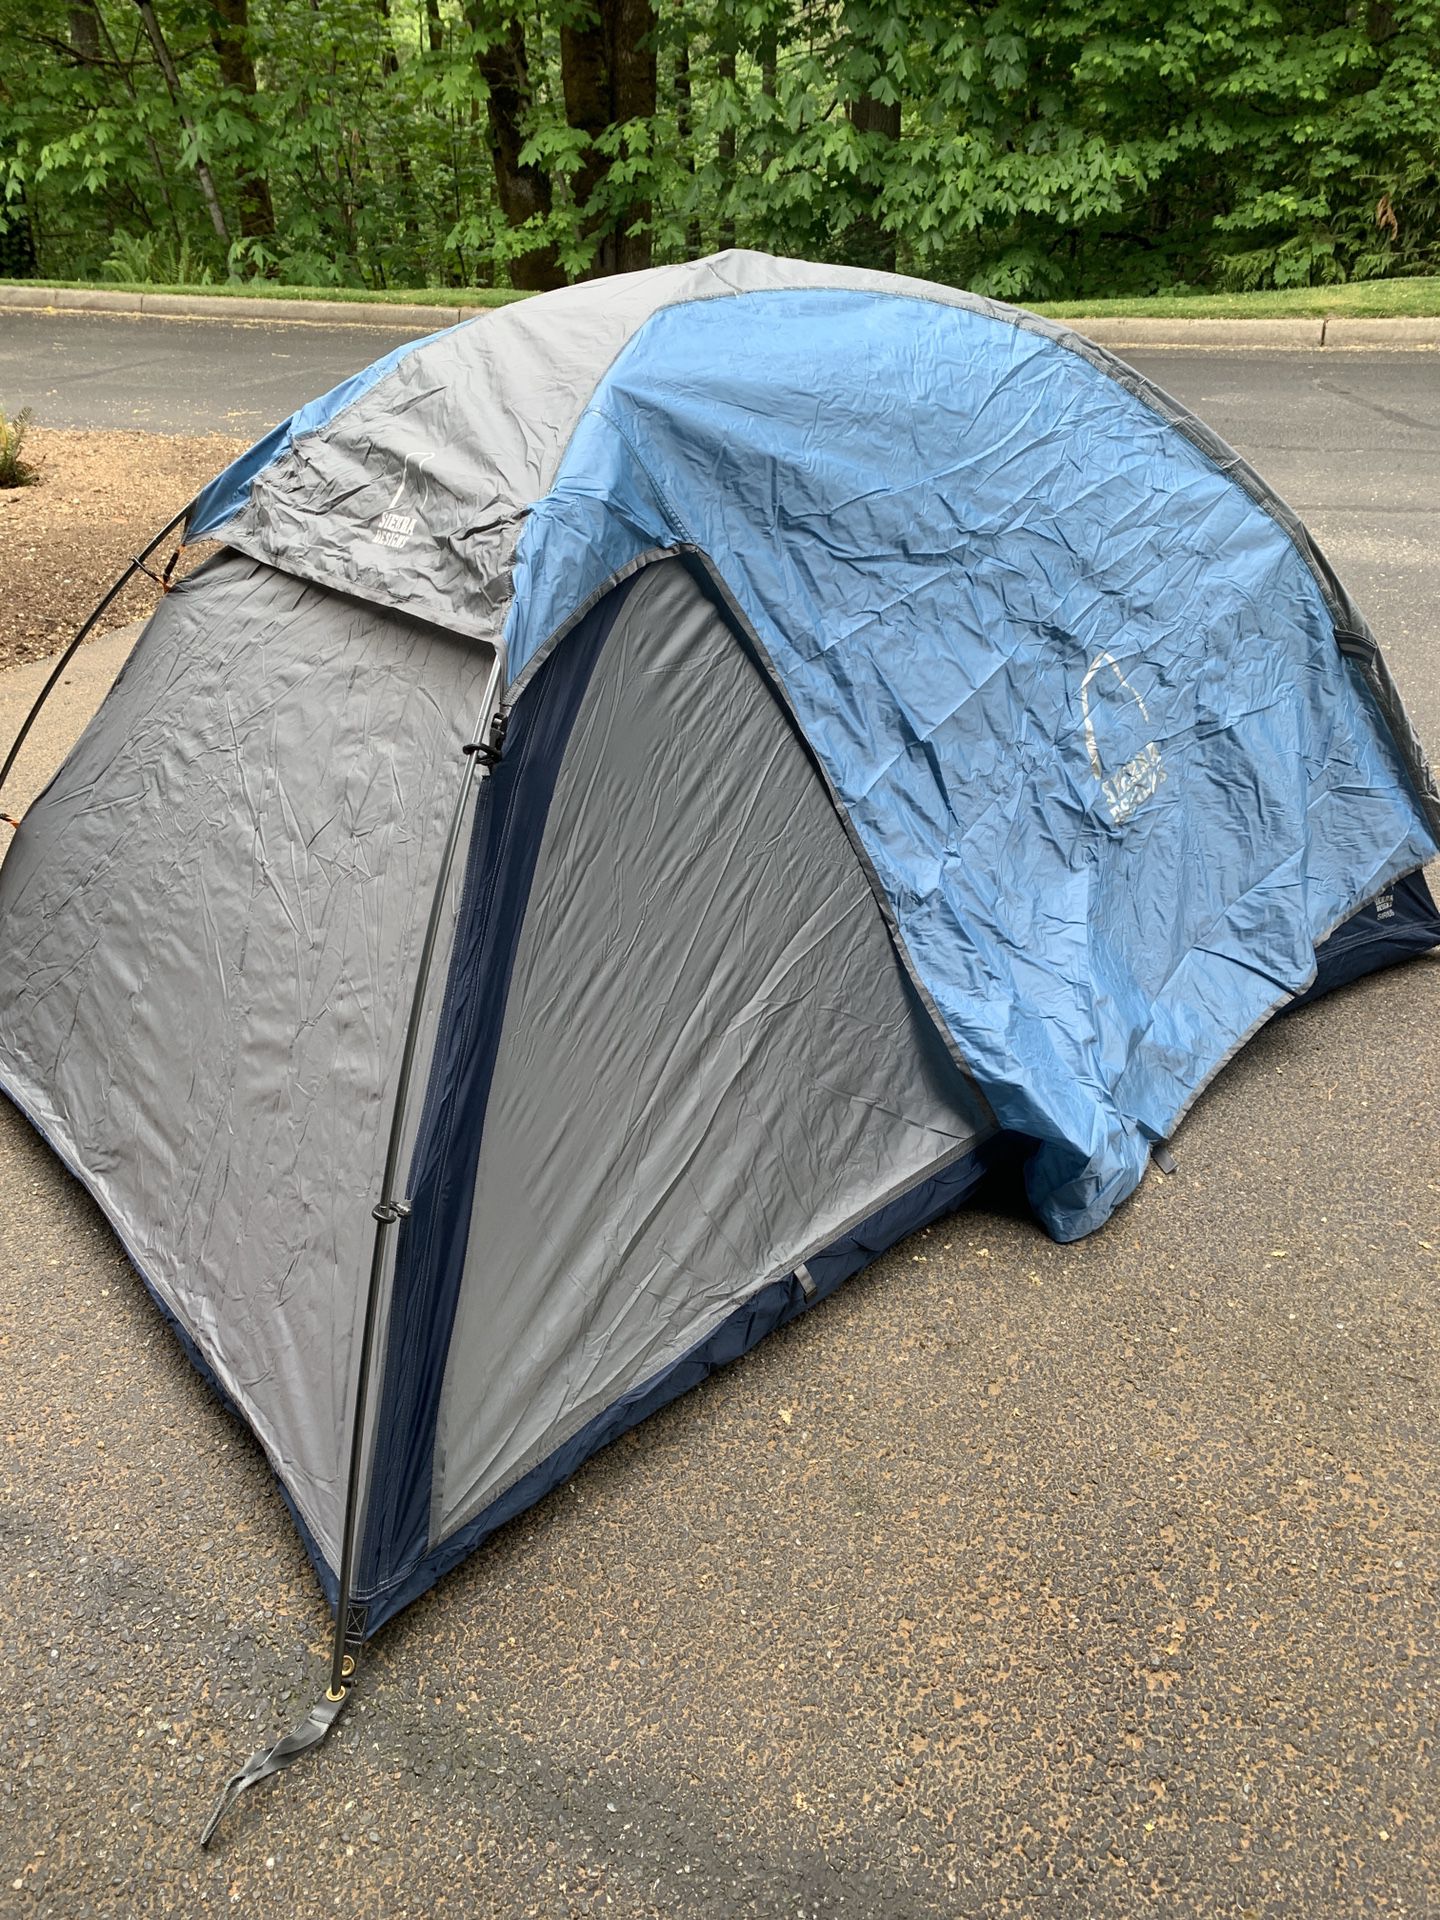 Sierra Designs Sirius Backpack Tent W/ Footprint 